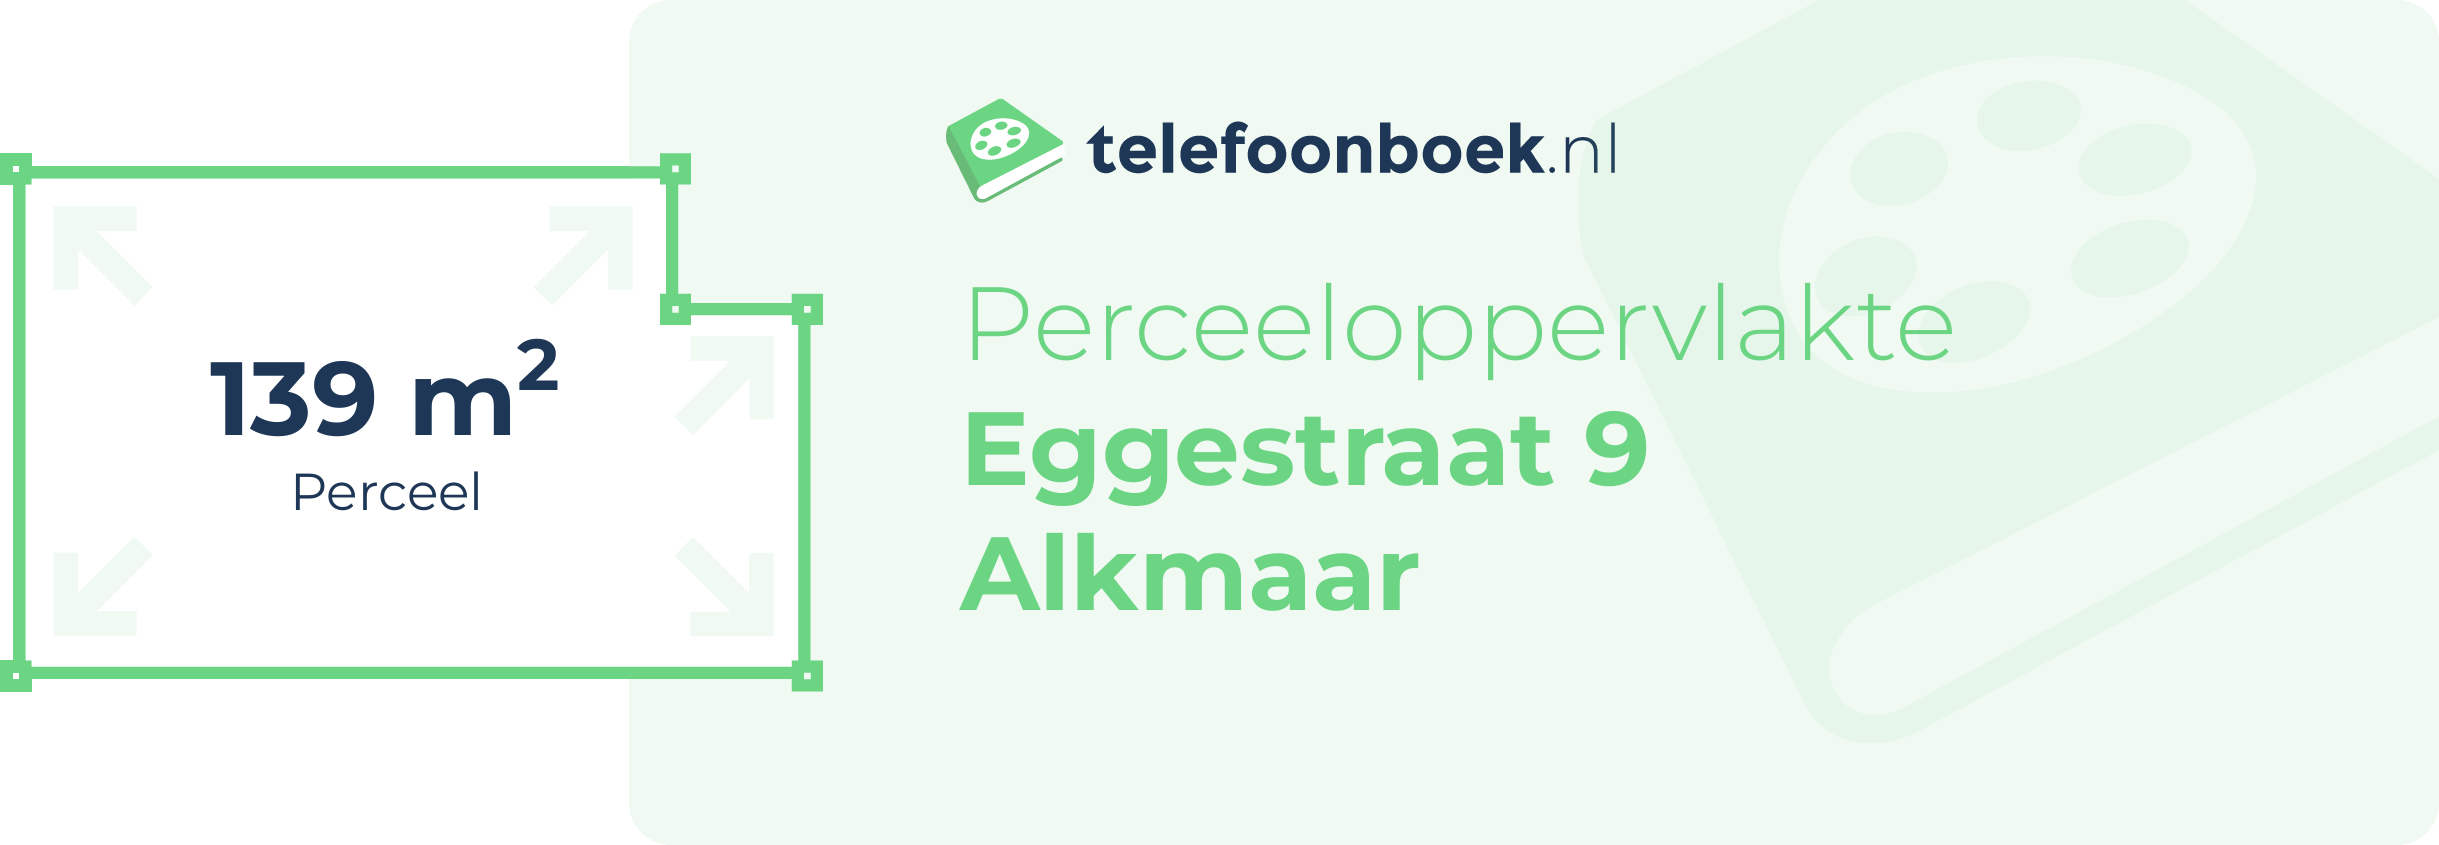 Perceeloppervlakte Eggestraat 9 Alkmaar